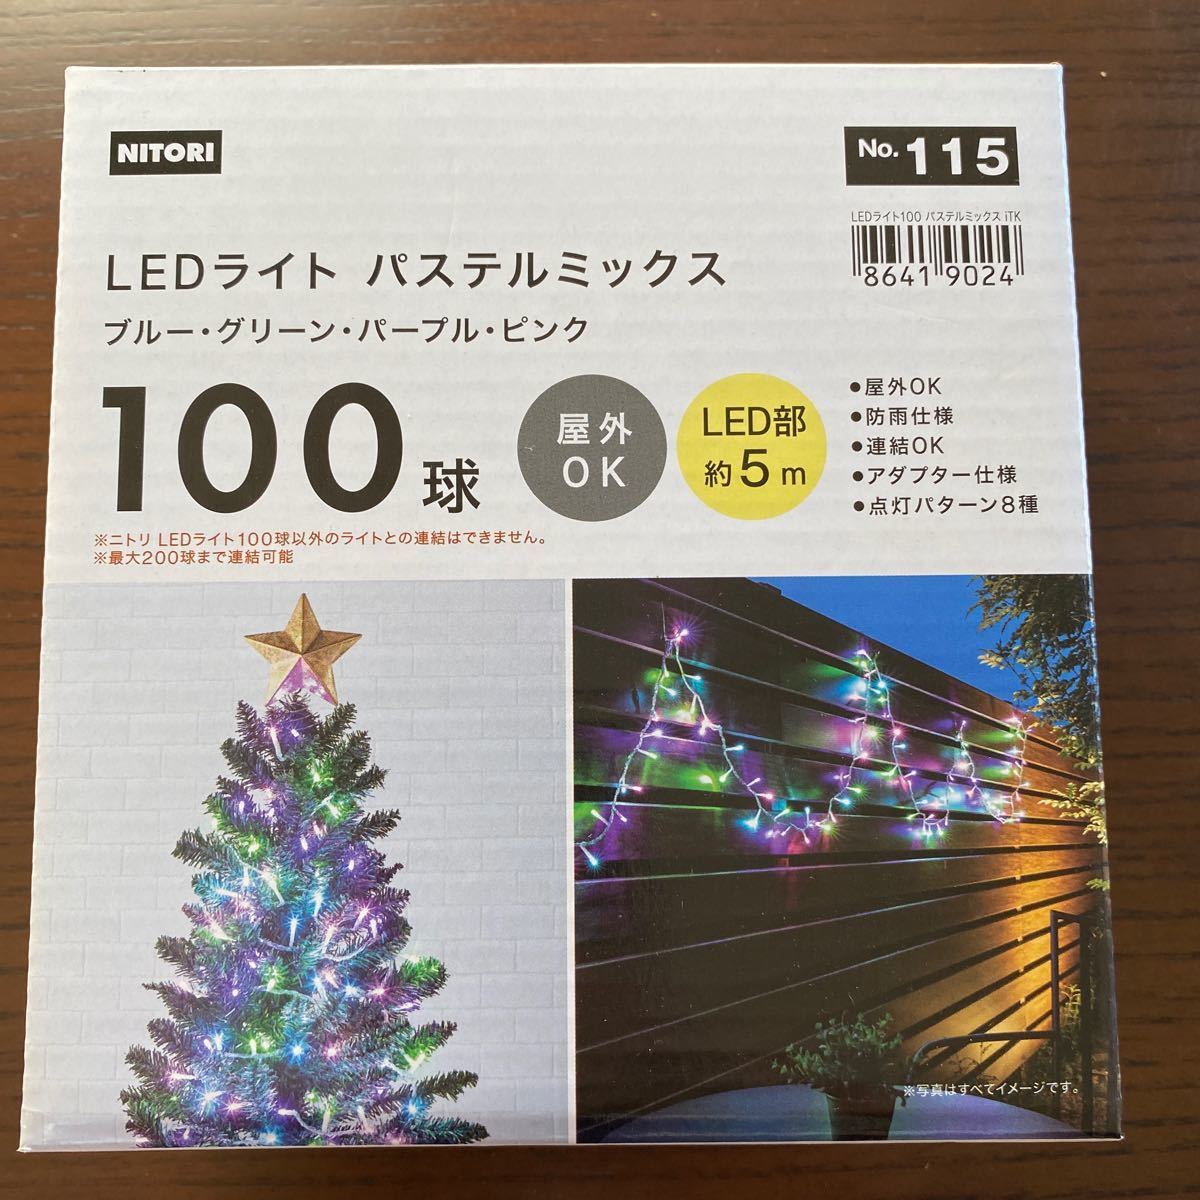 1500円 9周年記念イベントが ニトリ LEDライト ブルー ホワイト 200球